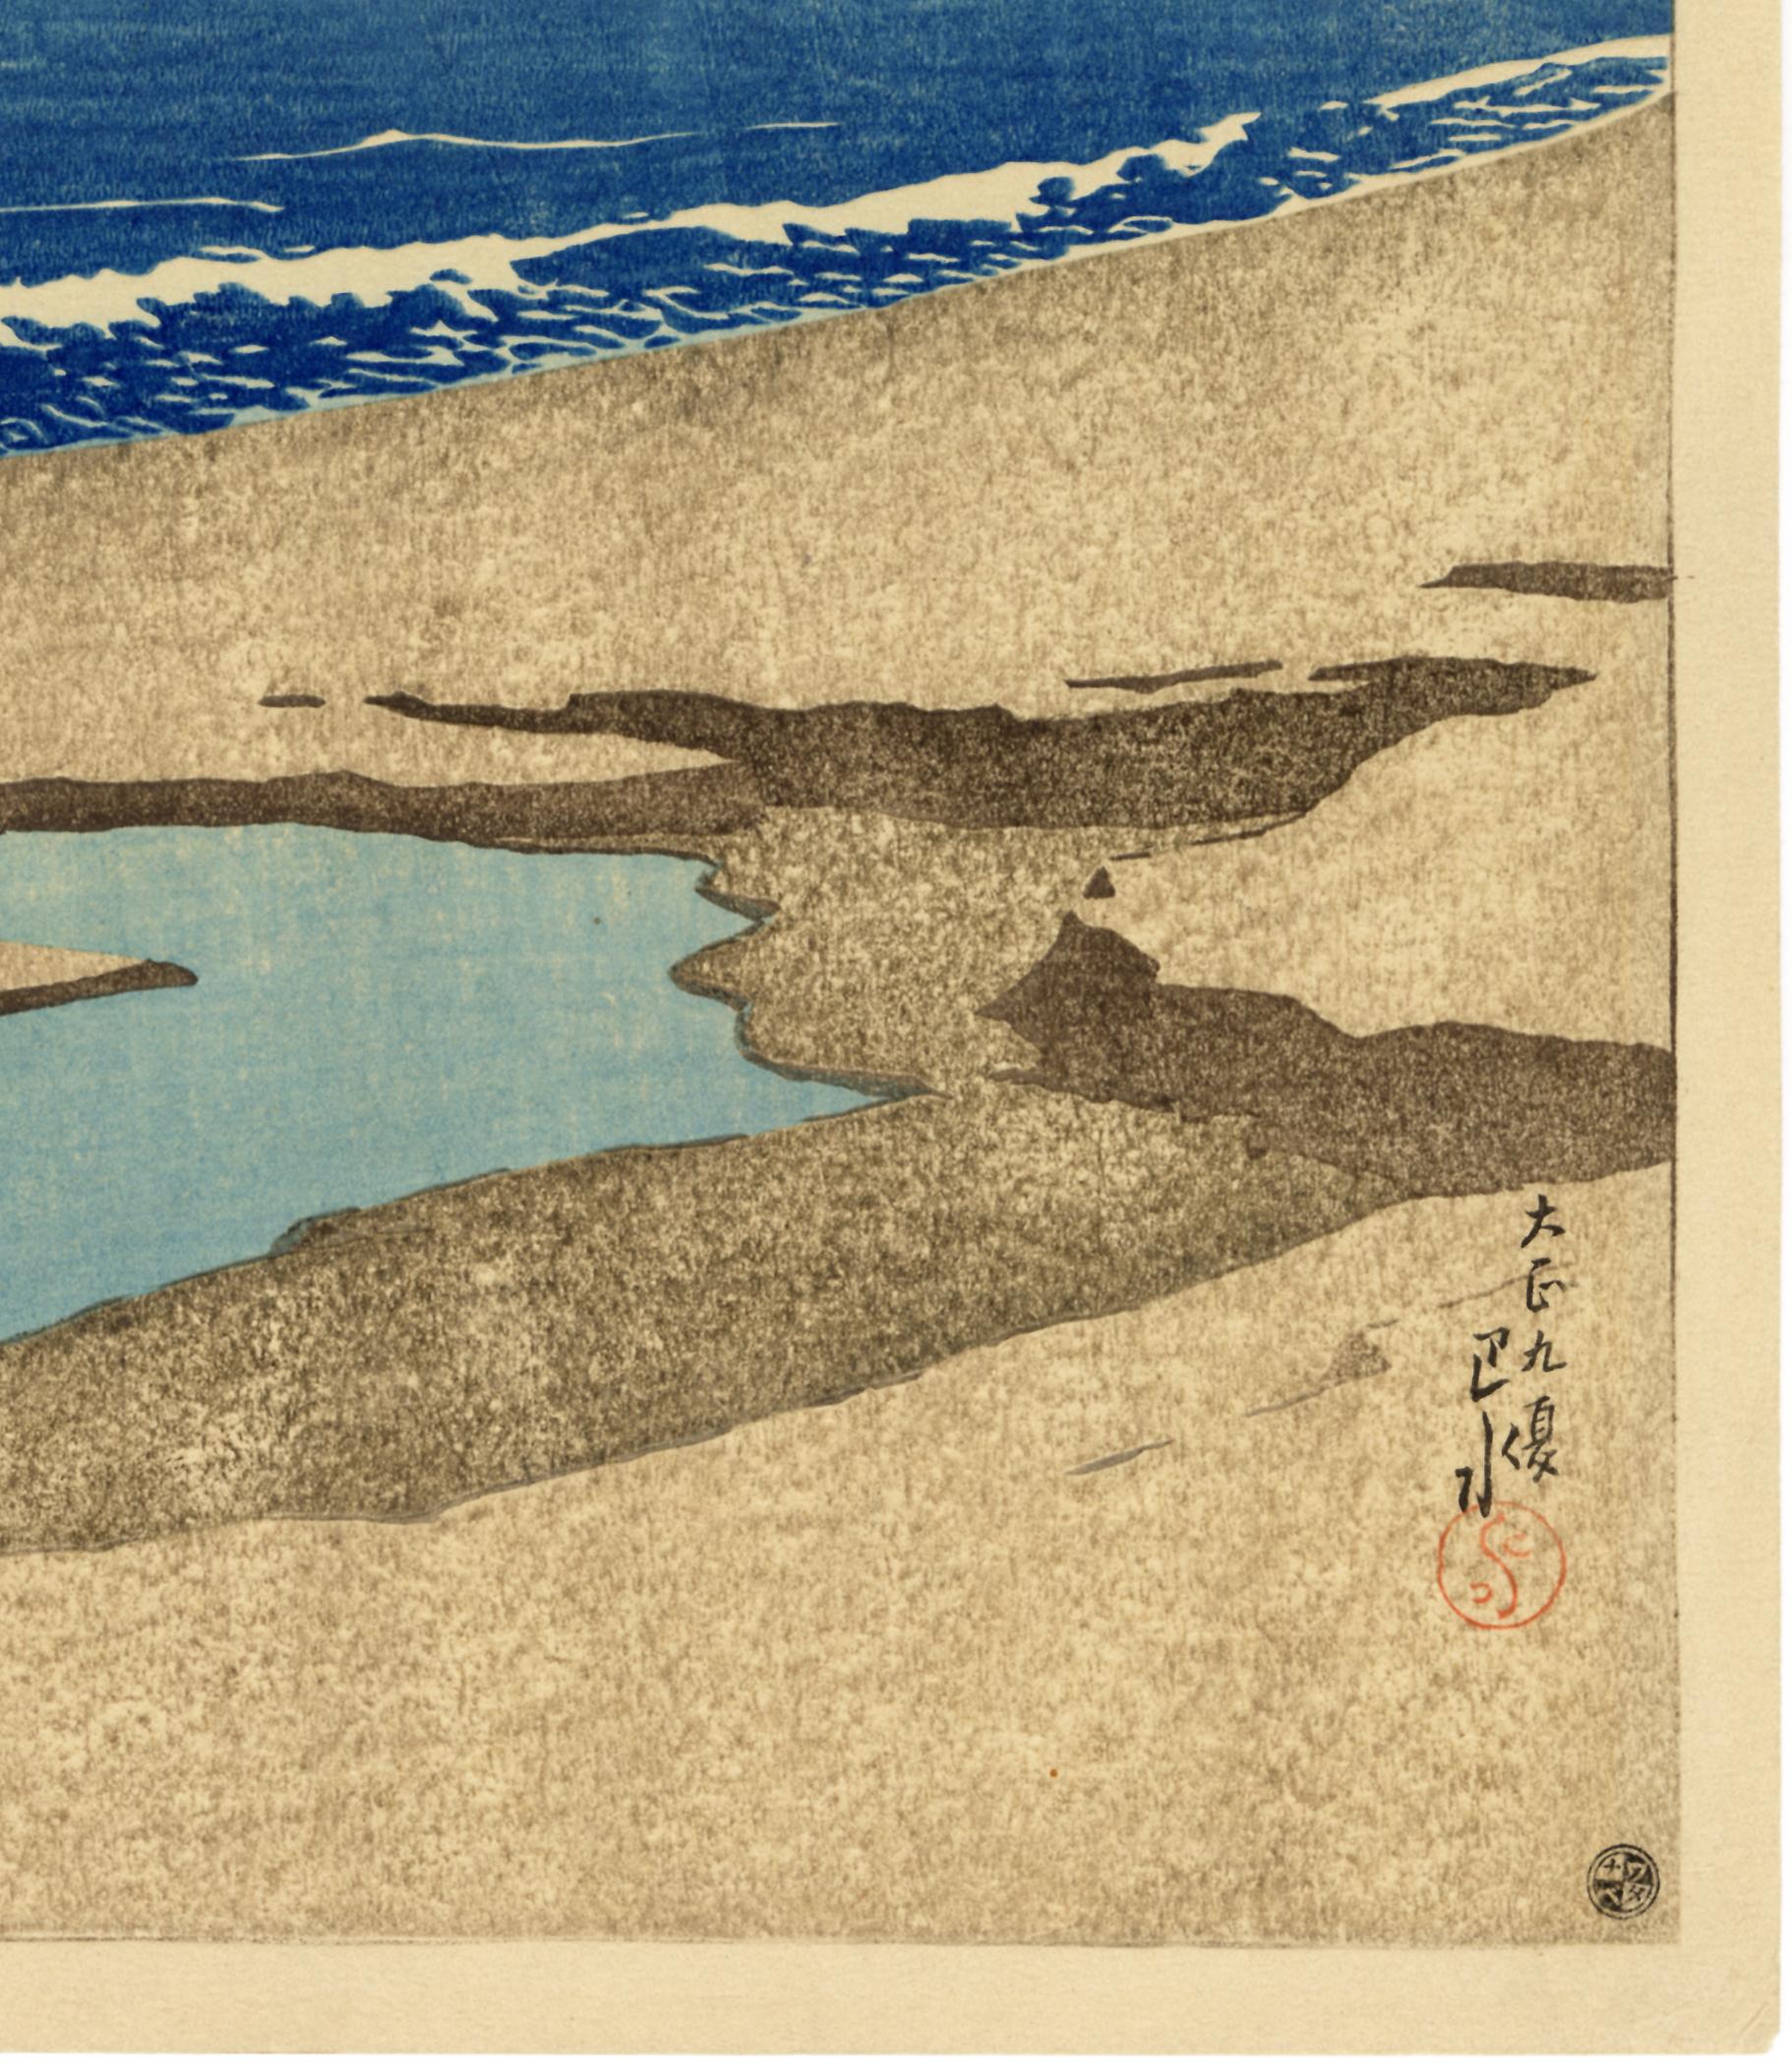 Iwai Seashore in Boshu - Showa Print by Kawase Hasui